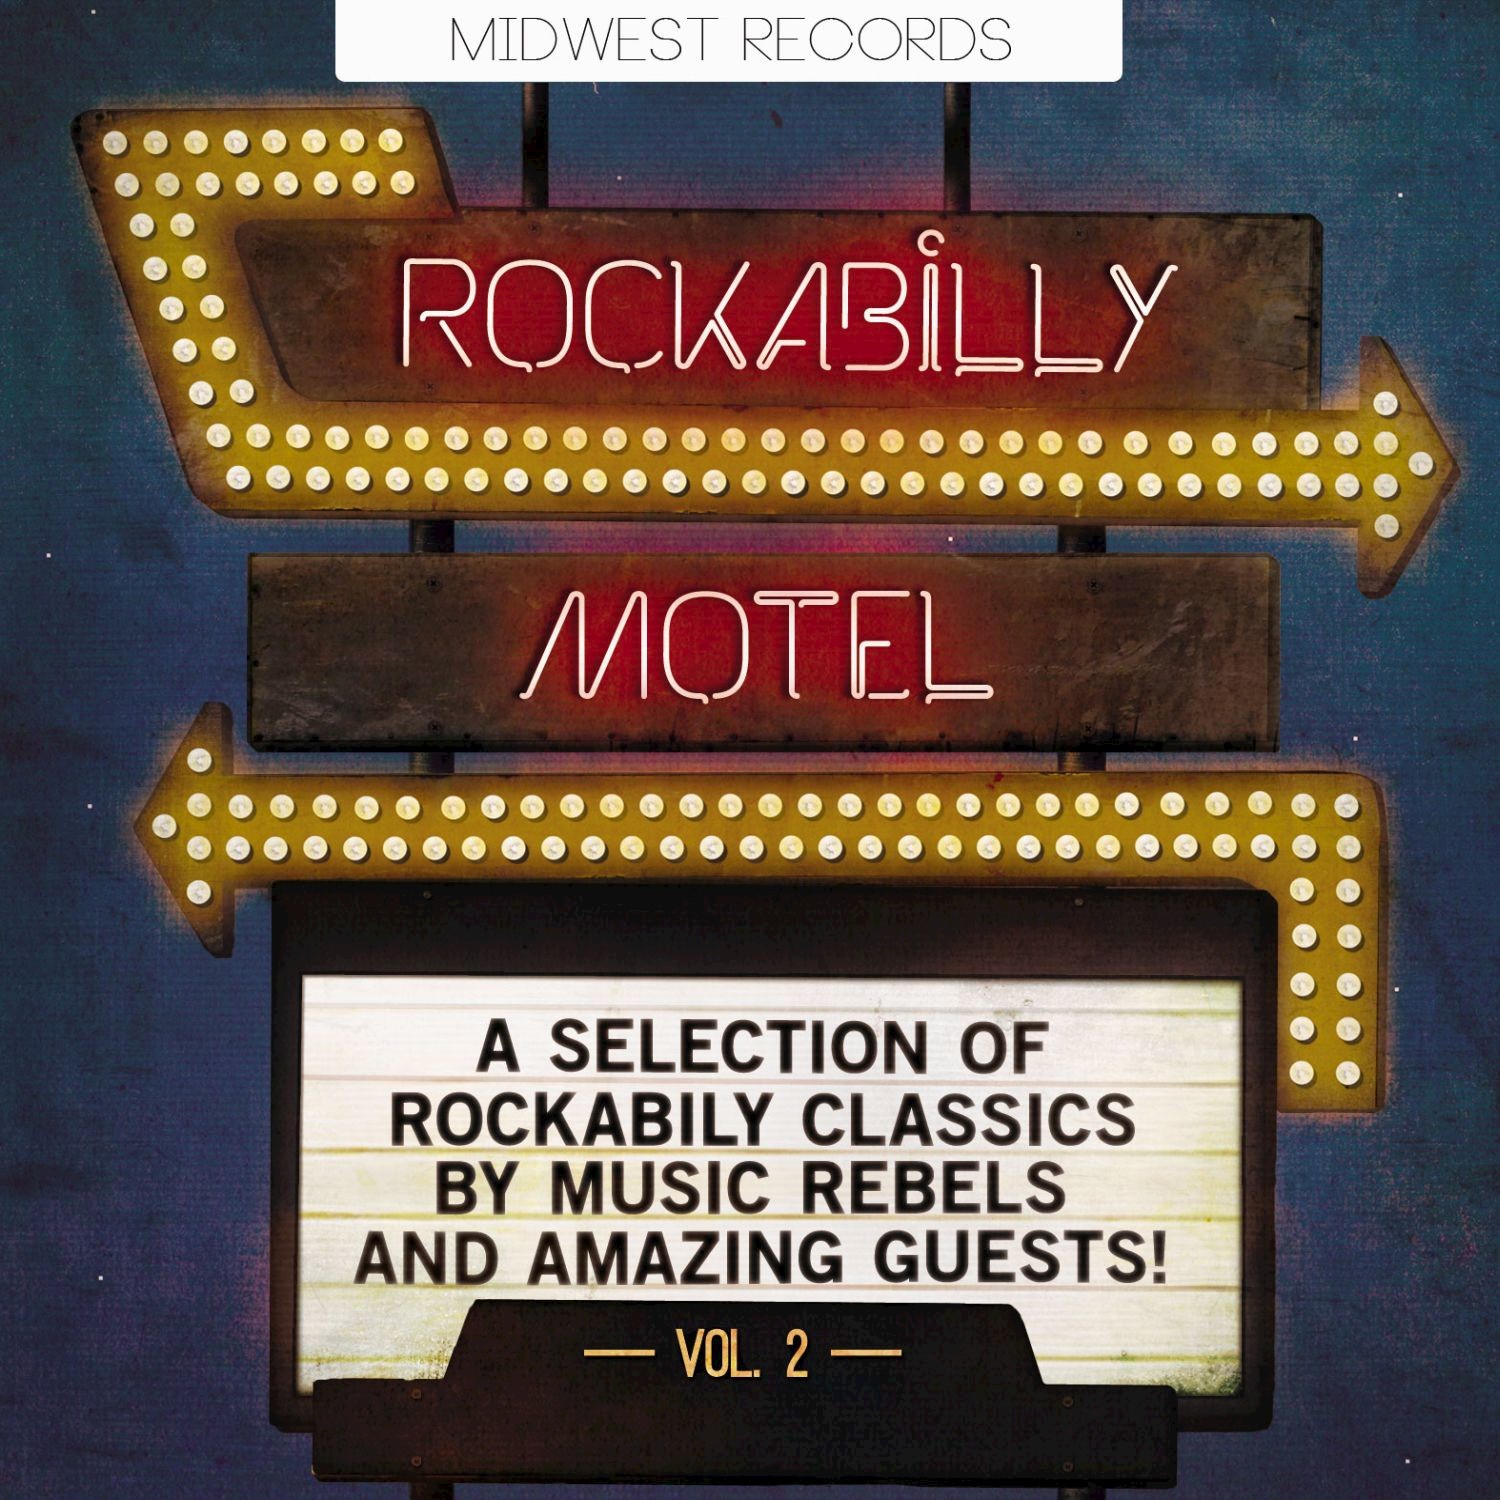 Rockabilly Motel Vol. 2